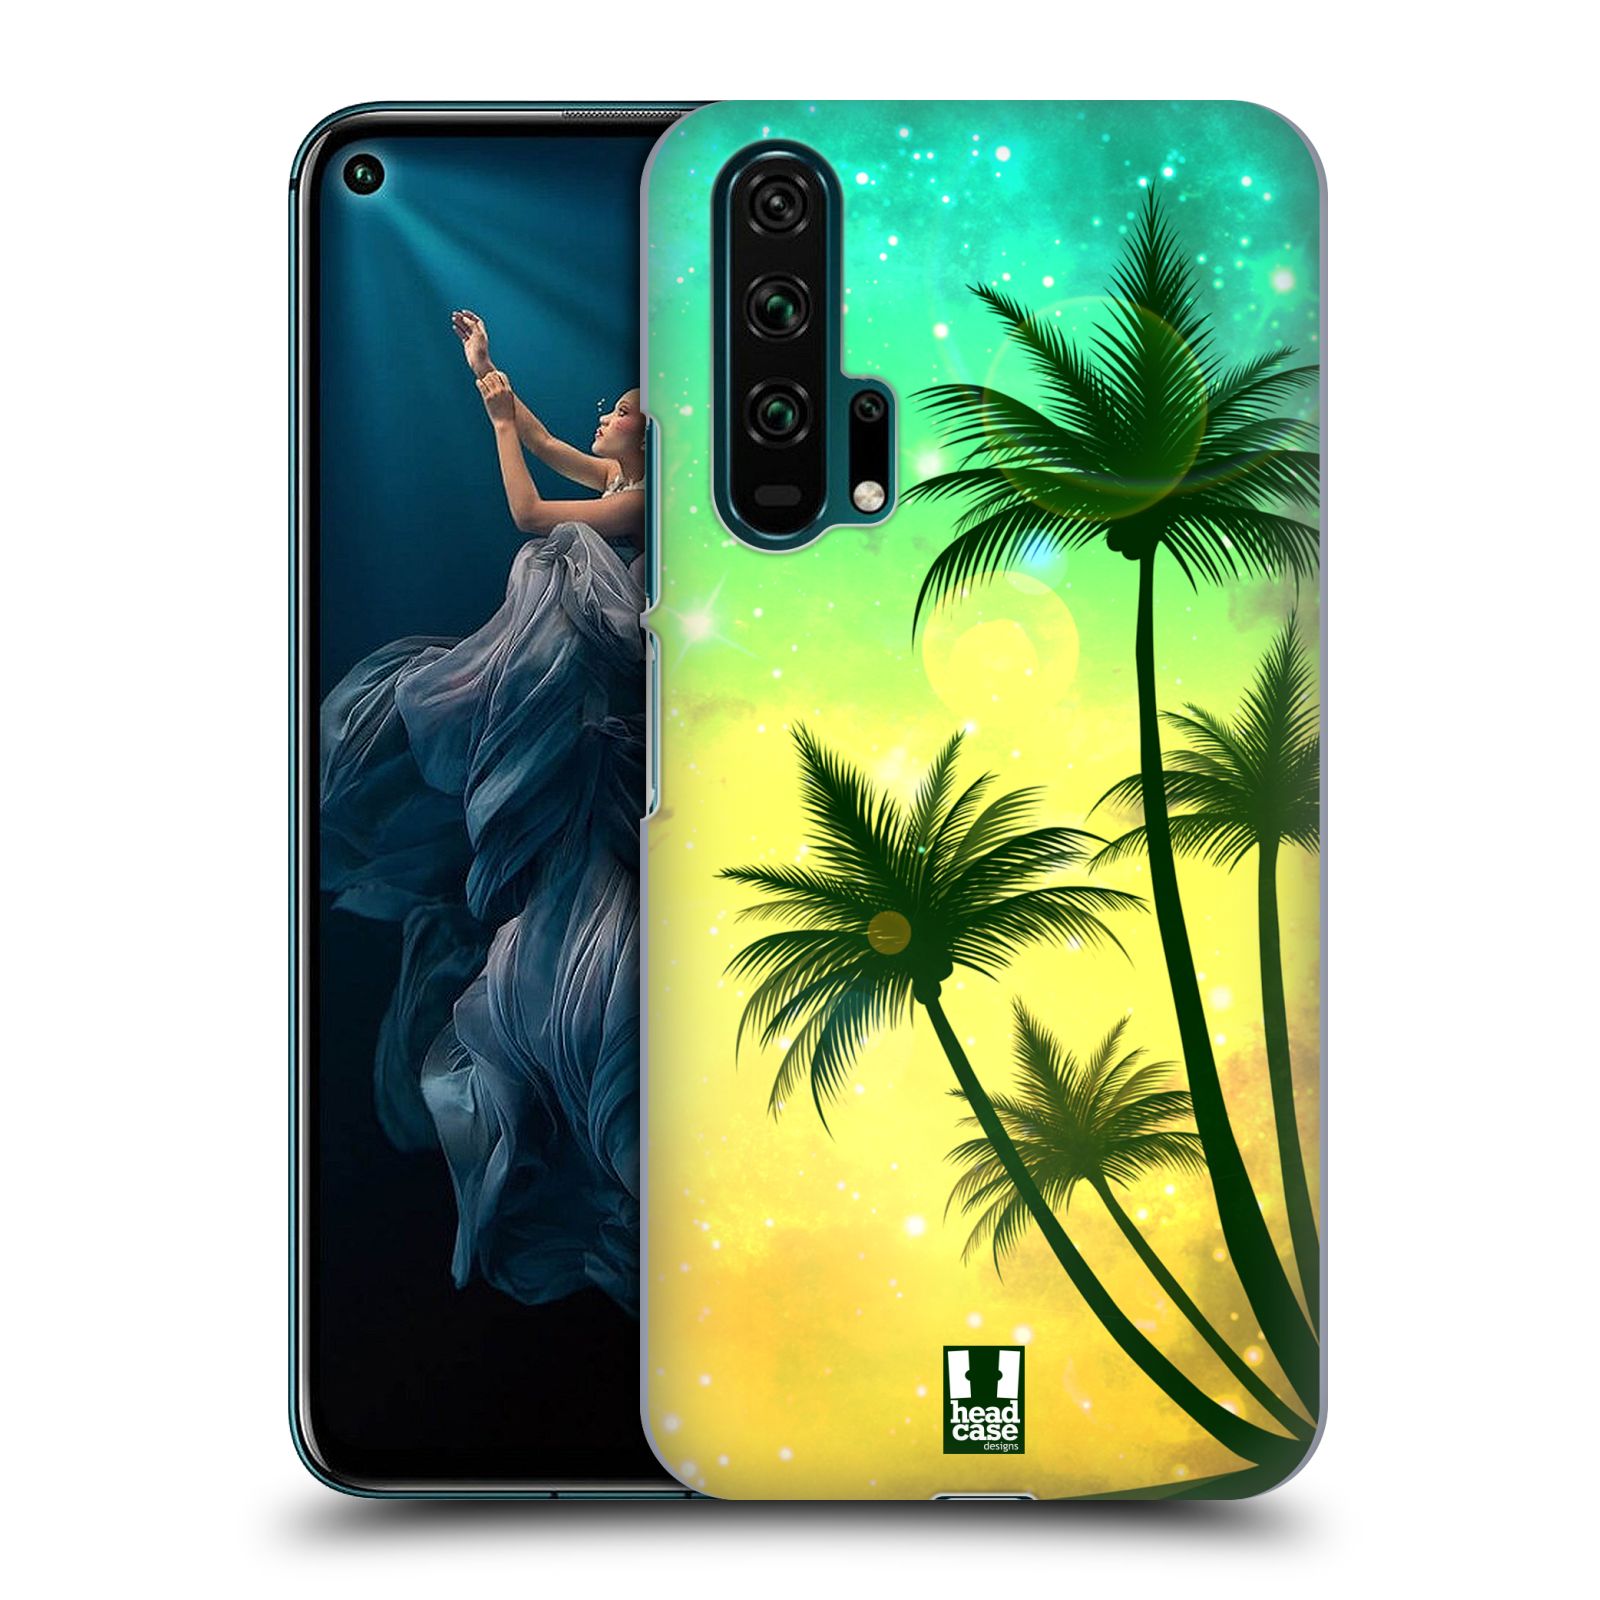 Pouzdro na mobil Honor 20 PRO - HEAD CASE - vzor Kreslený motiv silueta moře a palmy TYRKYSOVÁ